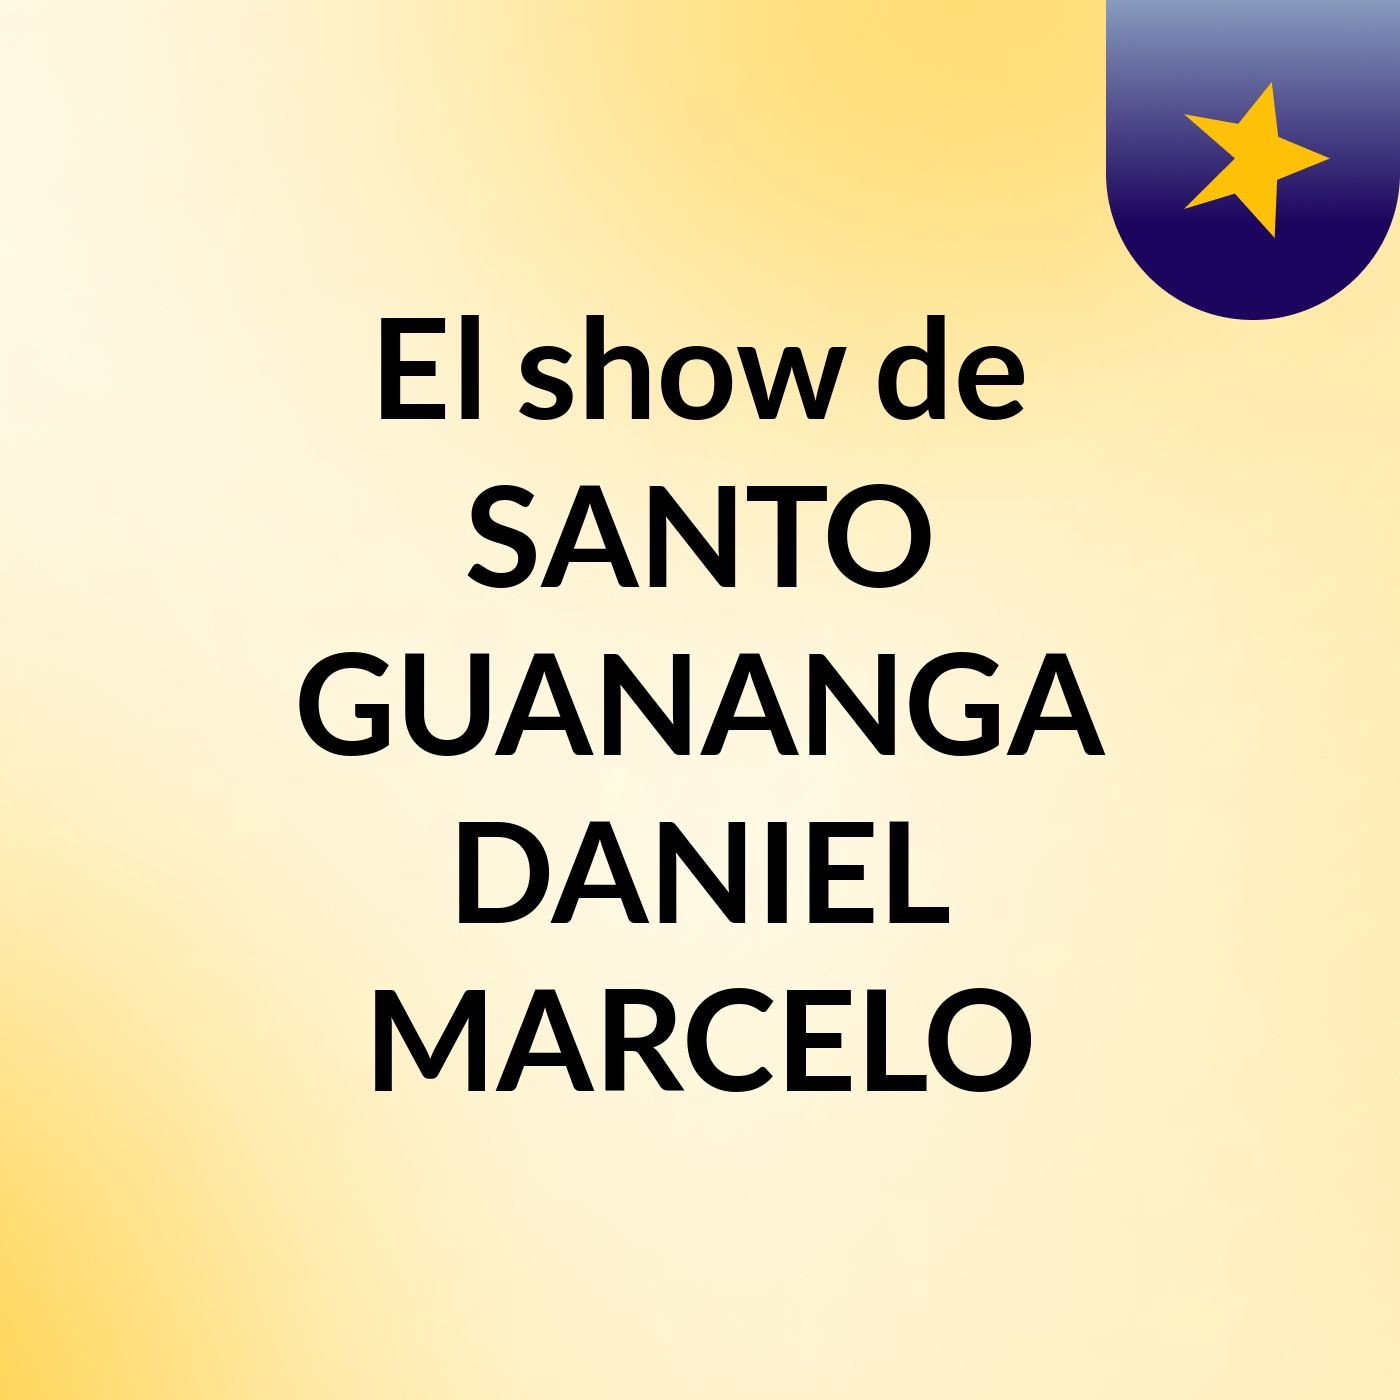 El show de SANTO GUANANGA DANIEL MARCELO